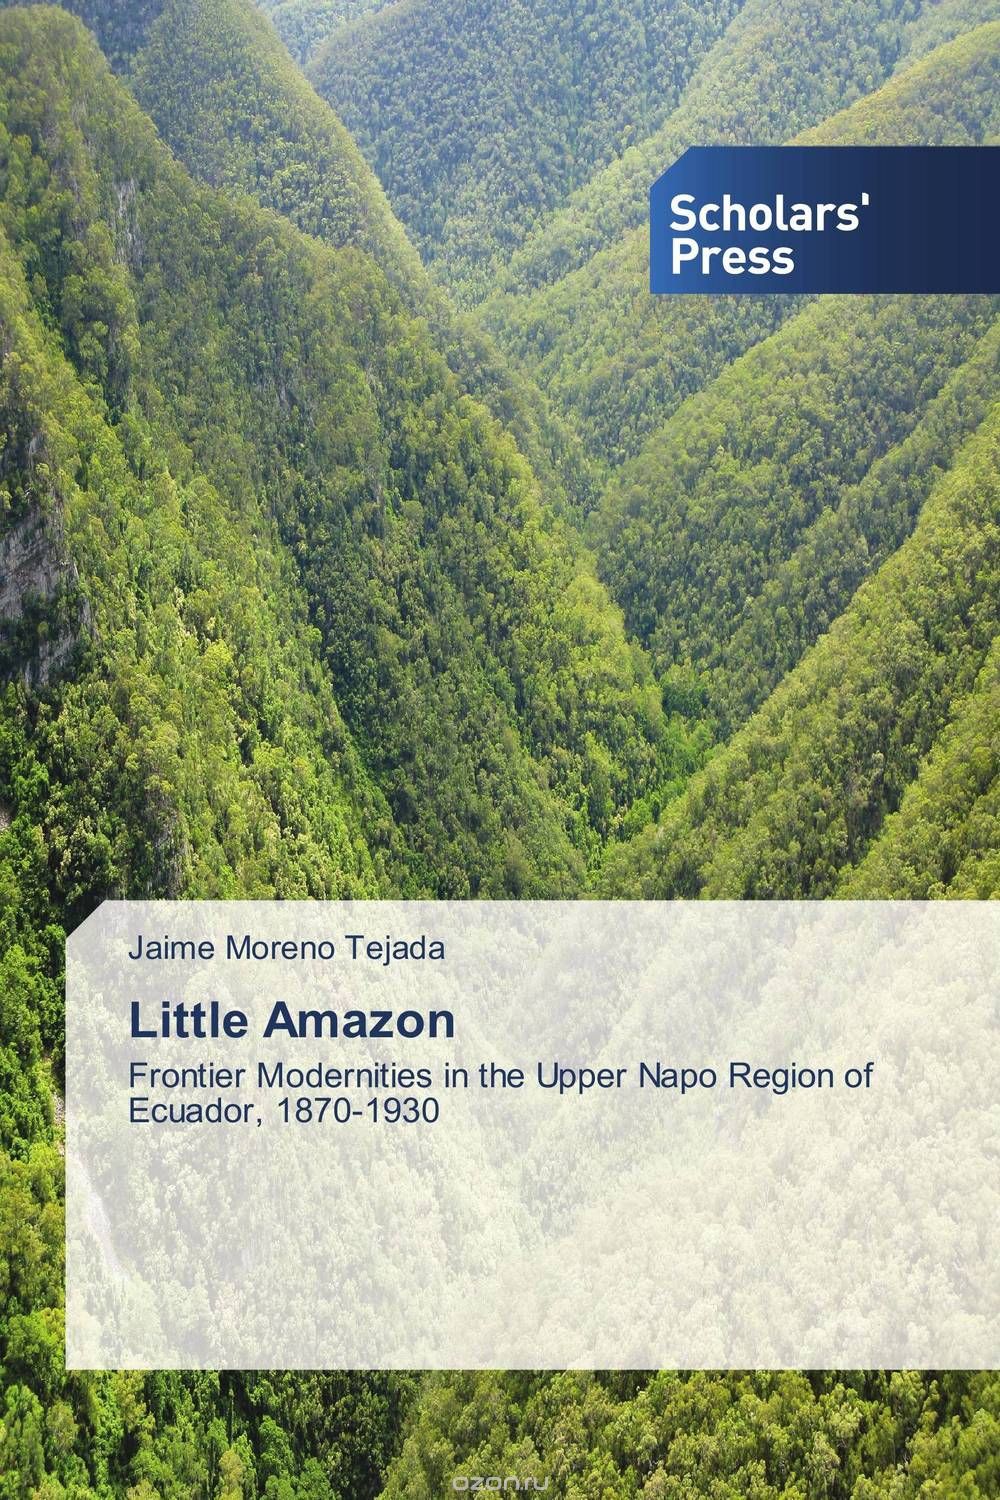 Скачать книгу "Little Amazon"